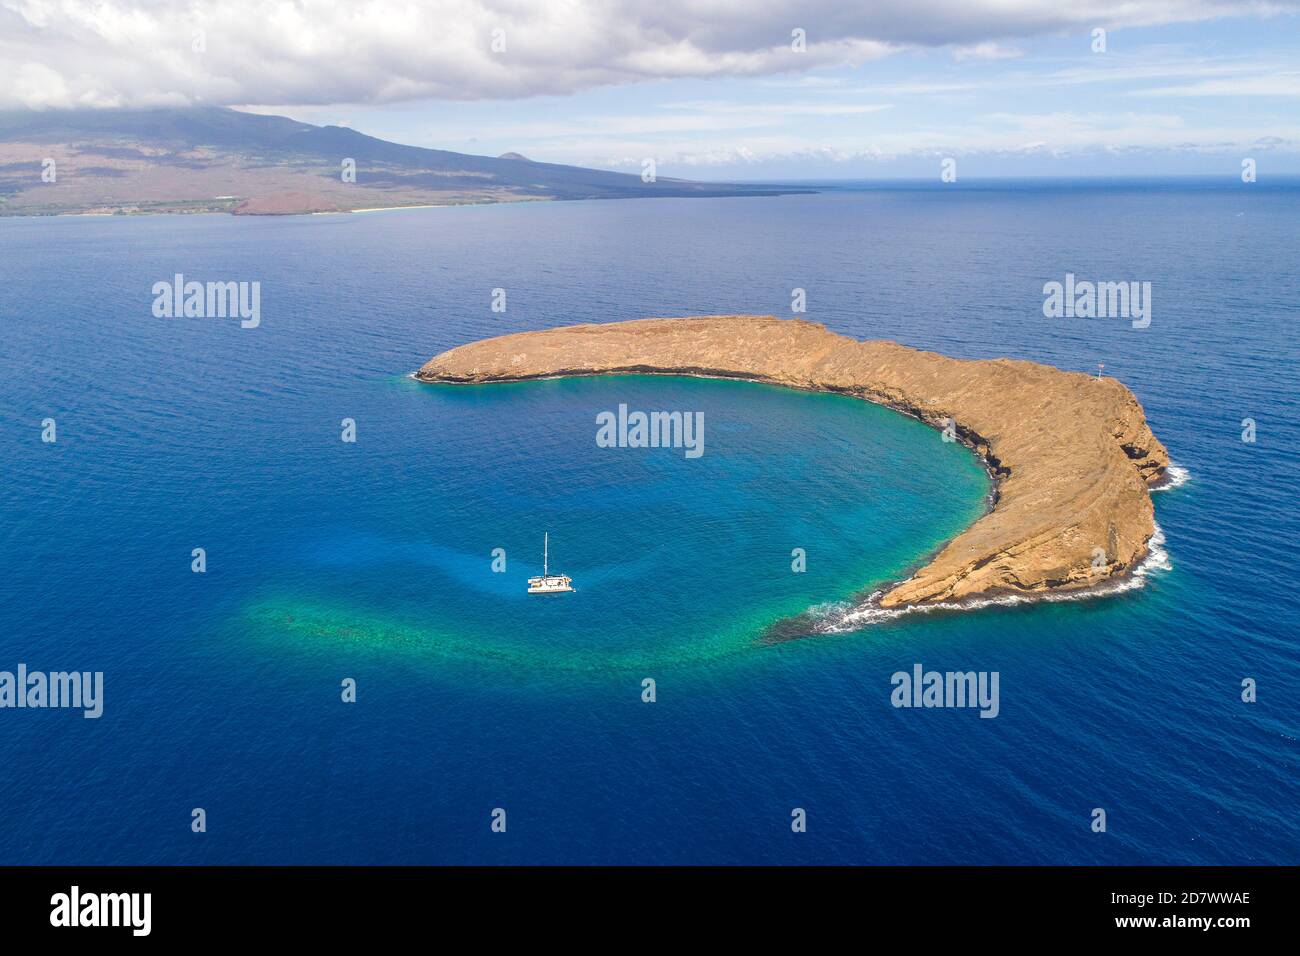 Molokini Crater, foto aerea di tutta l'isolotto a forma di mezzaluna con una barca a vela charter e l'isola di Maui sullo sfondo, Hawaii. Foto Stock